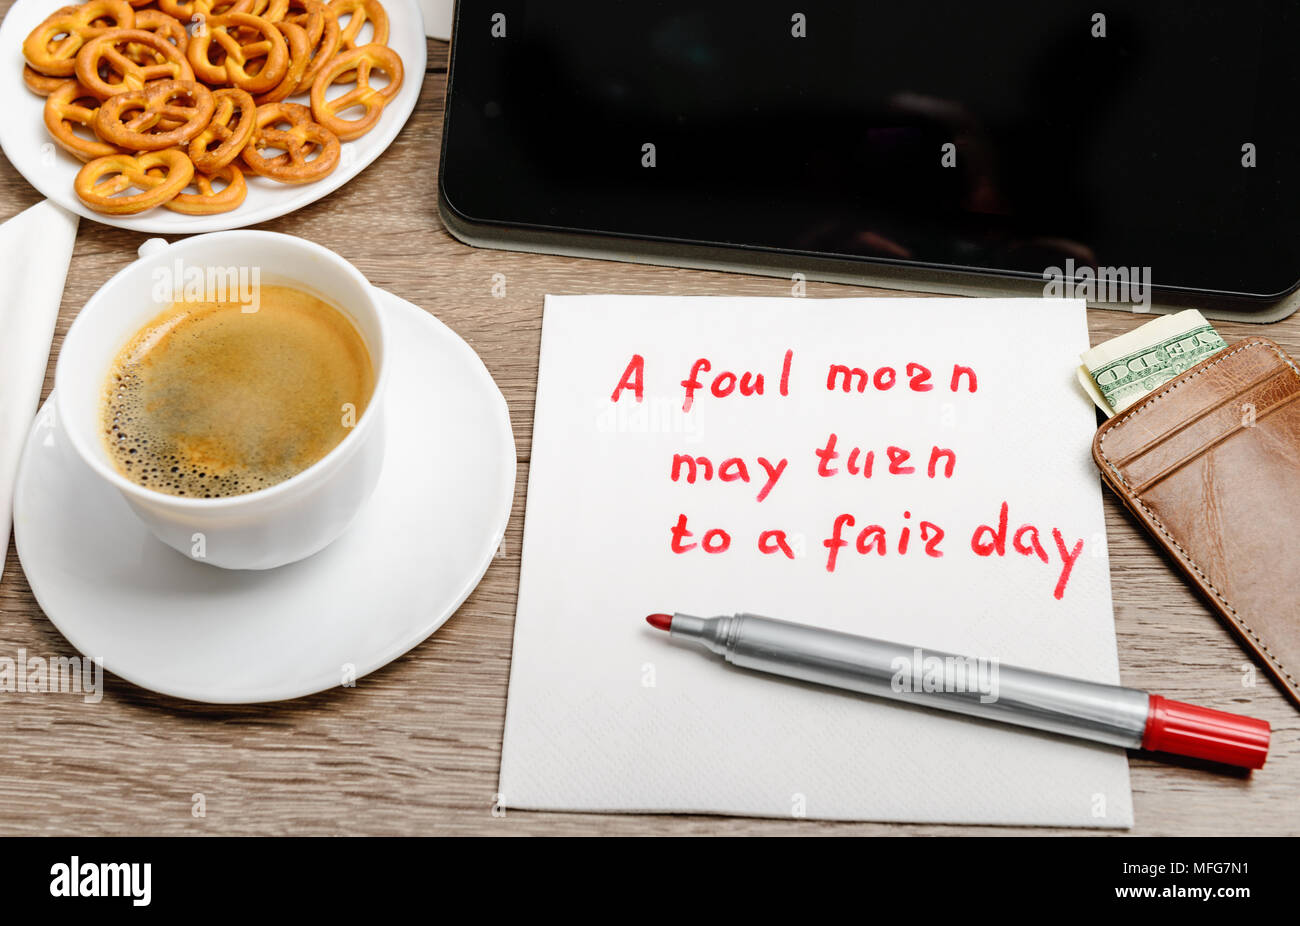 Tovagliolo proverbio del messaggio sul tavolo di legno con caffè, alcuni alimenti e tablet PC un fallo mattino può ruotare per un giorno di fiera Foto Stock